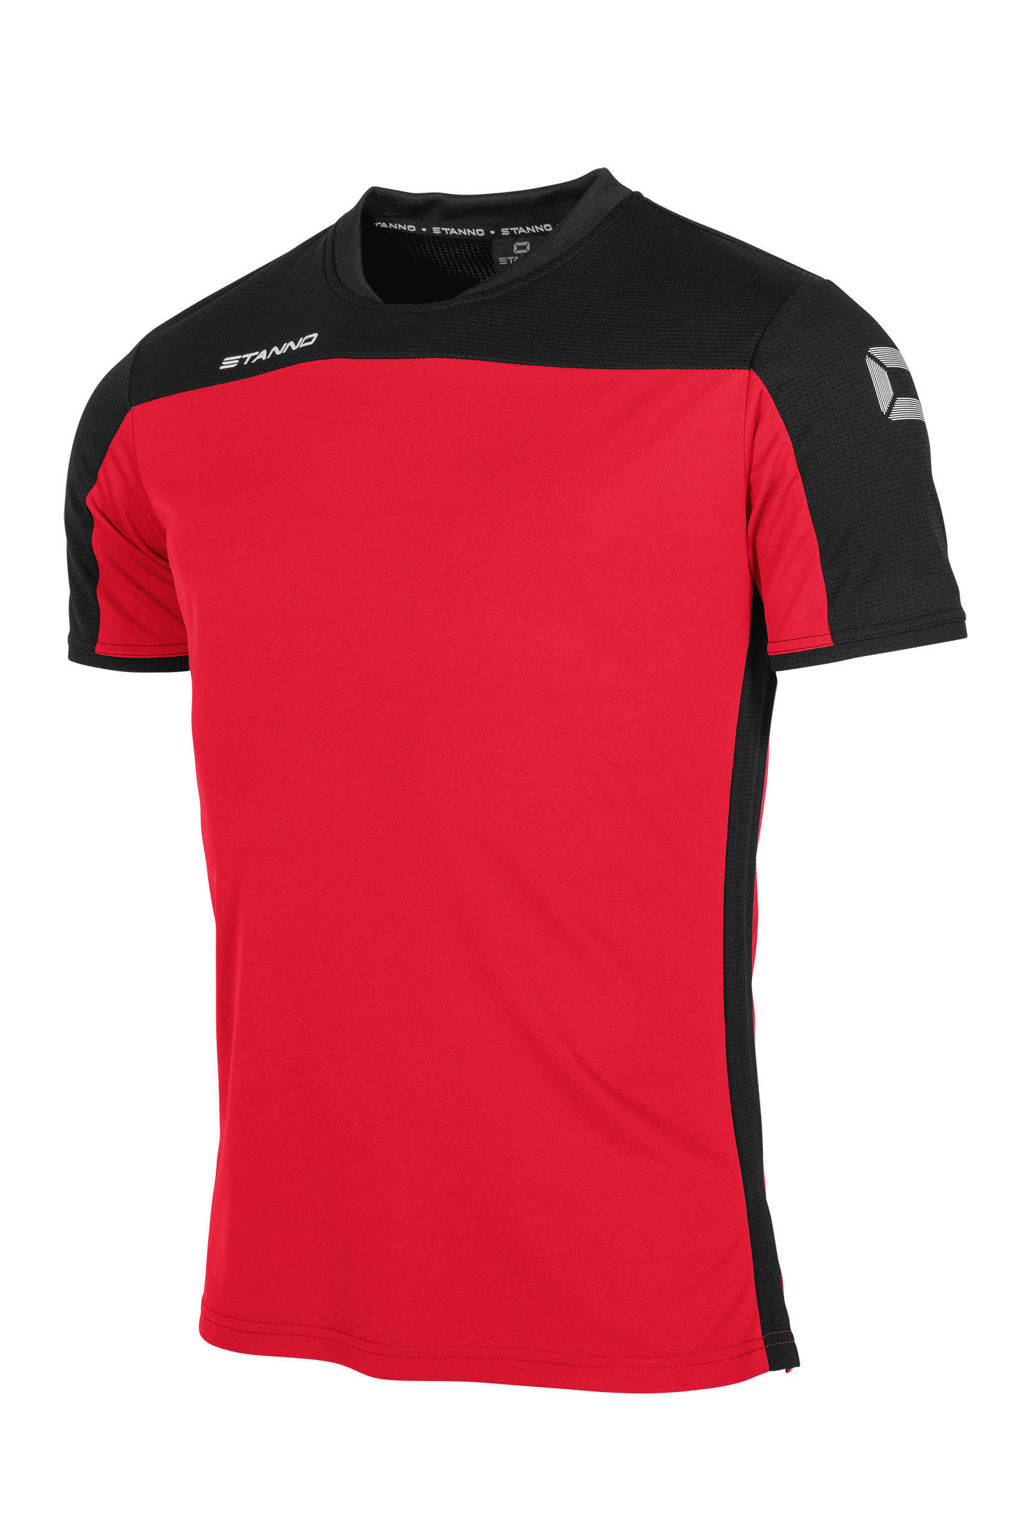 Stanno Junior  voetbalshirt rood/zwart